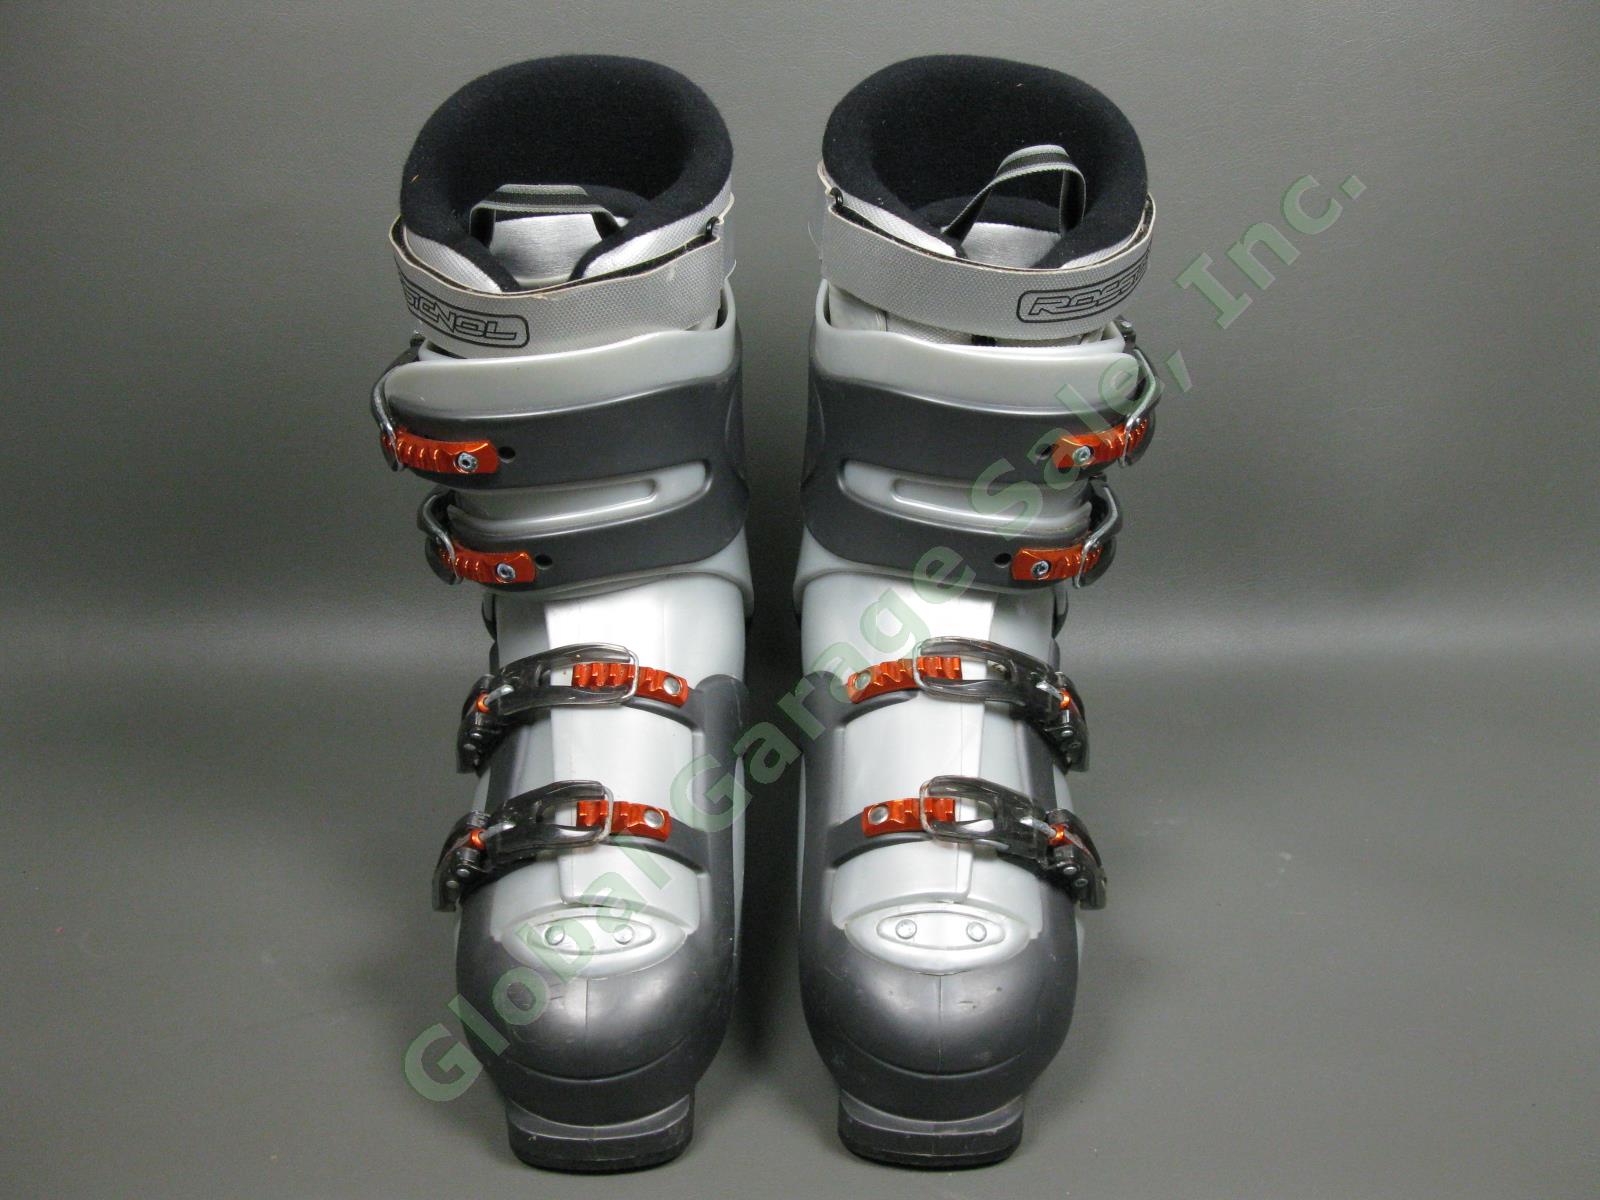 Rossignol Salto X Cockpit Orange/Silver Ski Boots Size 30.5 EUR/13 US/12 UK NR! 2